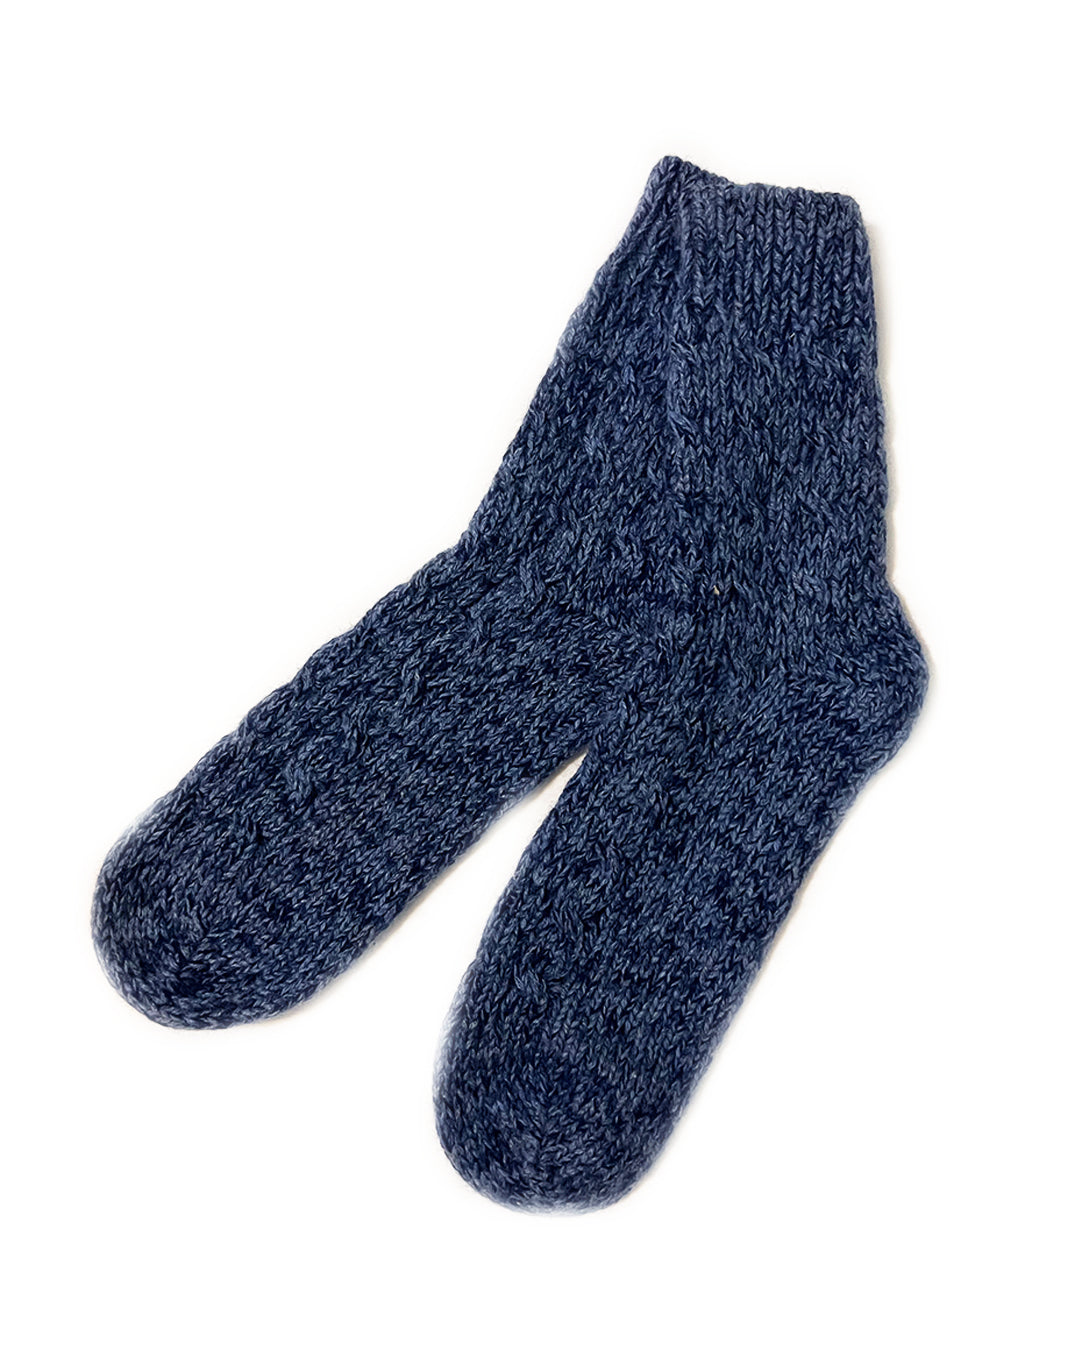 Cornflower Blue Gray Navy Blend Cableknit Cashmere Socks | cukimber designs